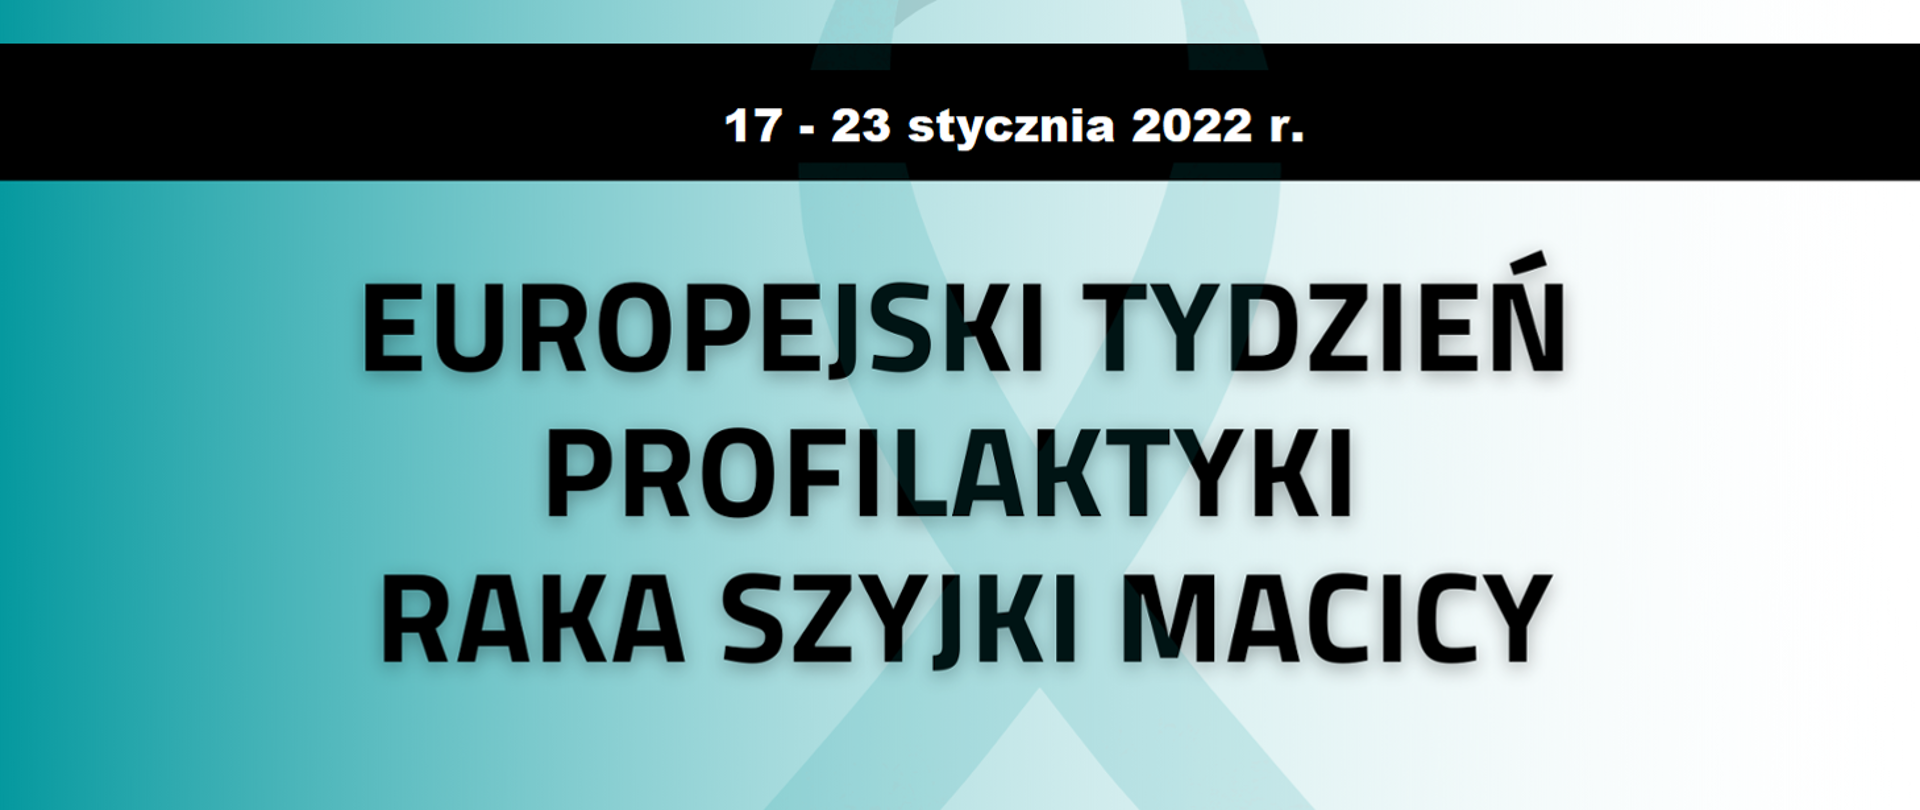 Europejski Tydzień Profilaktyki Raka Szyjki Macicy 2022